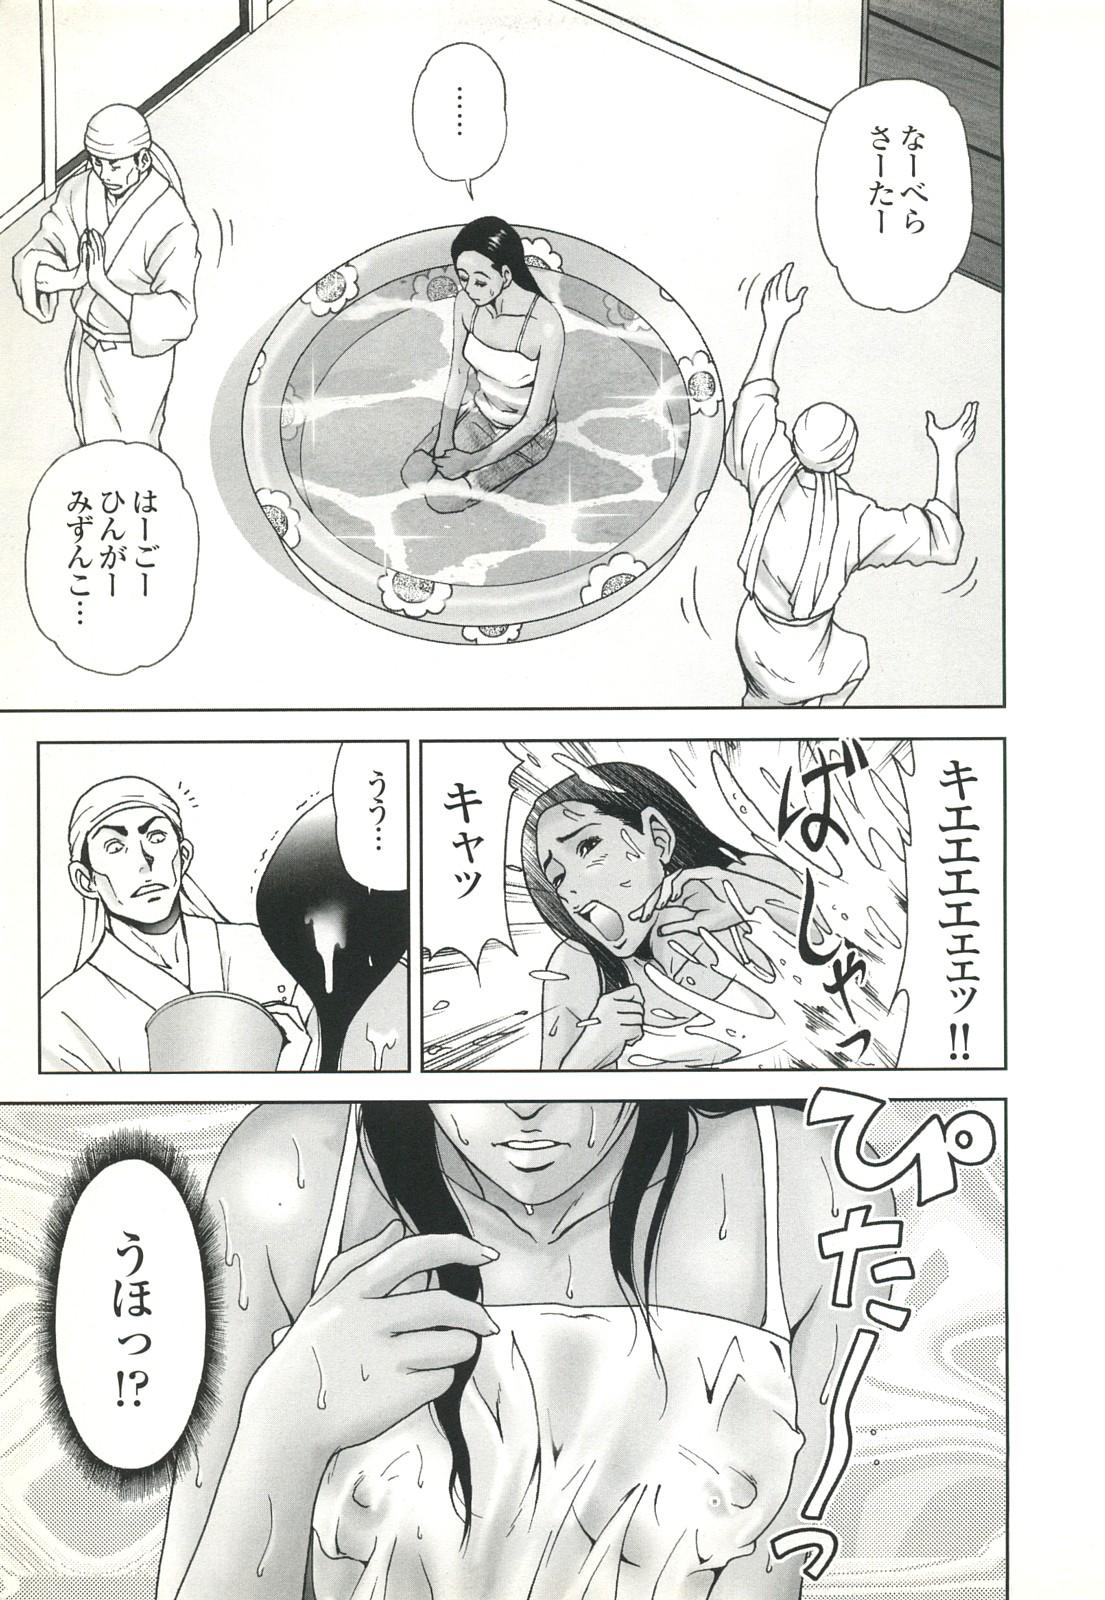 コミック裏モノJAPAN Vol.18 今井のりたつスペシャル号 52